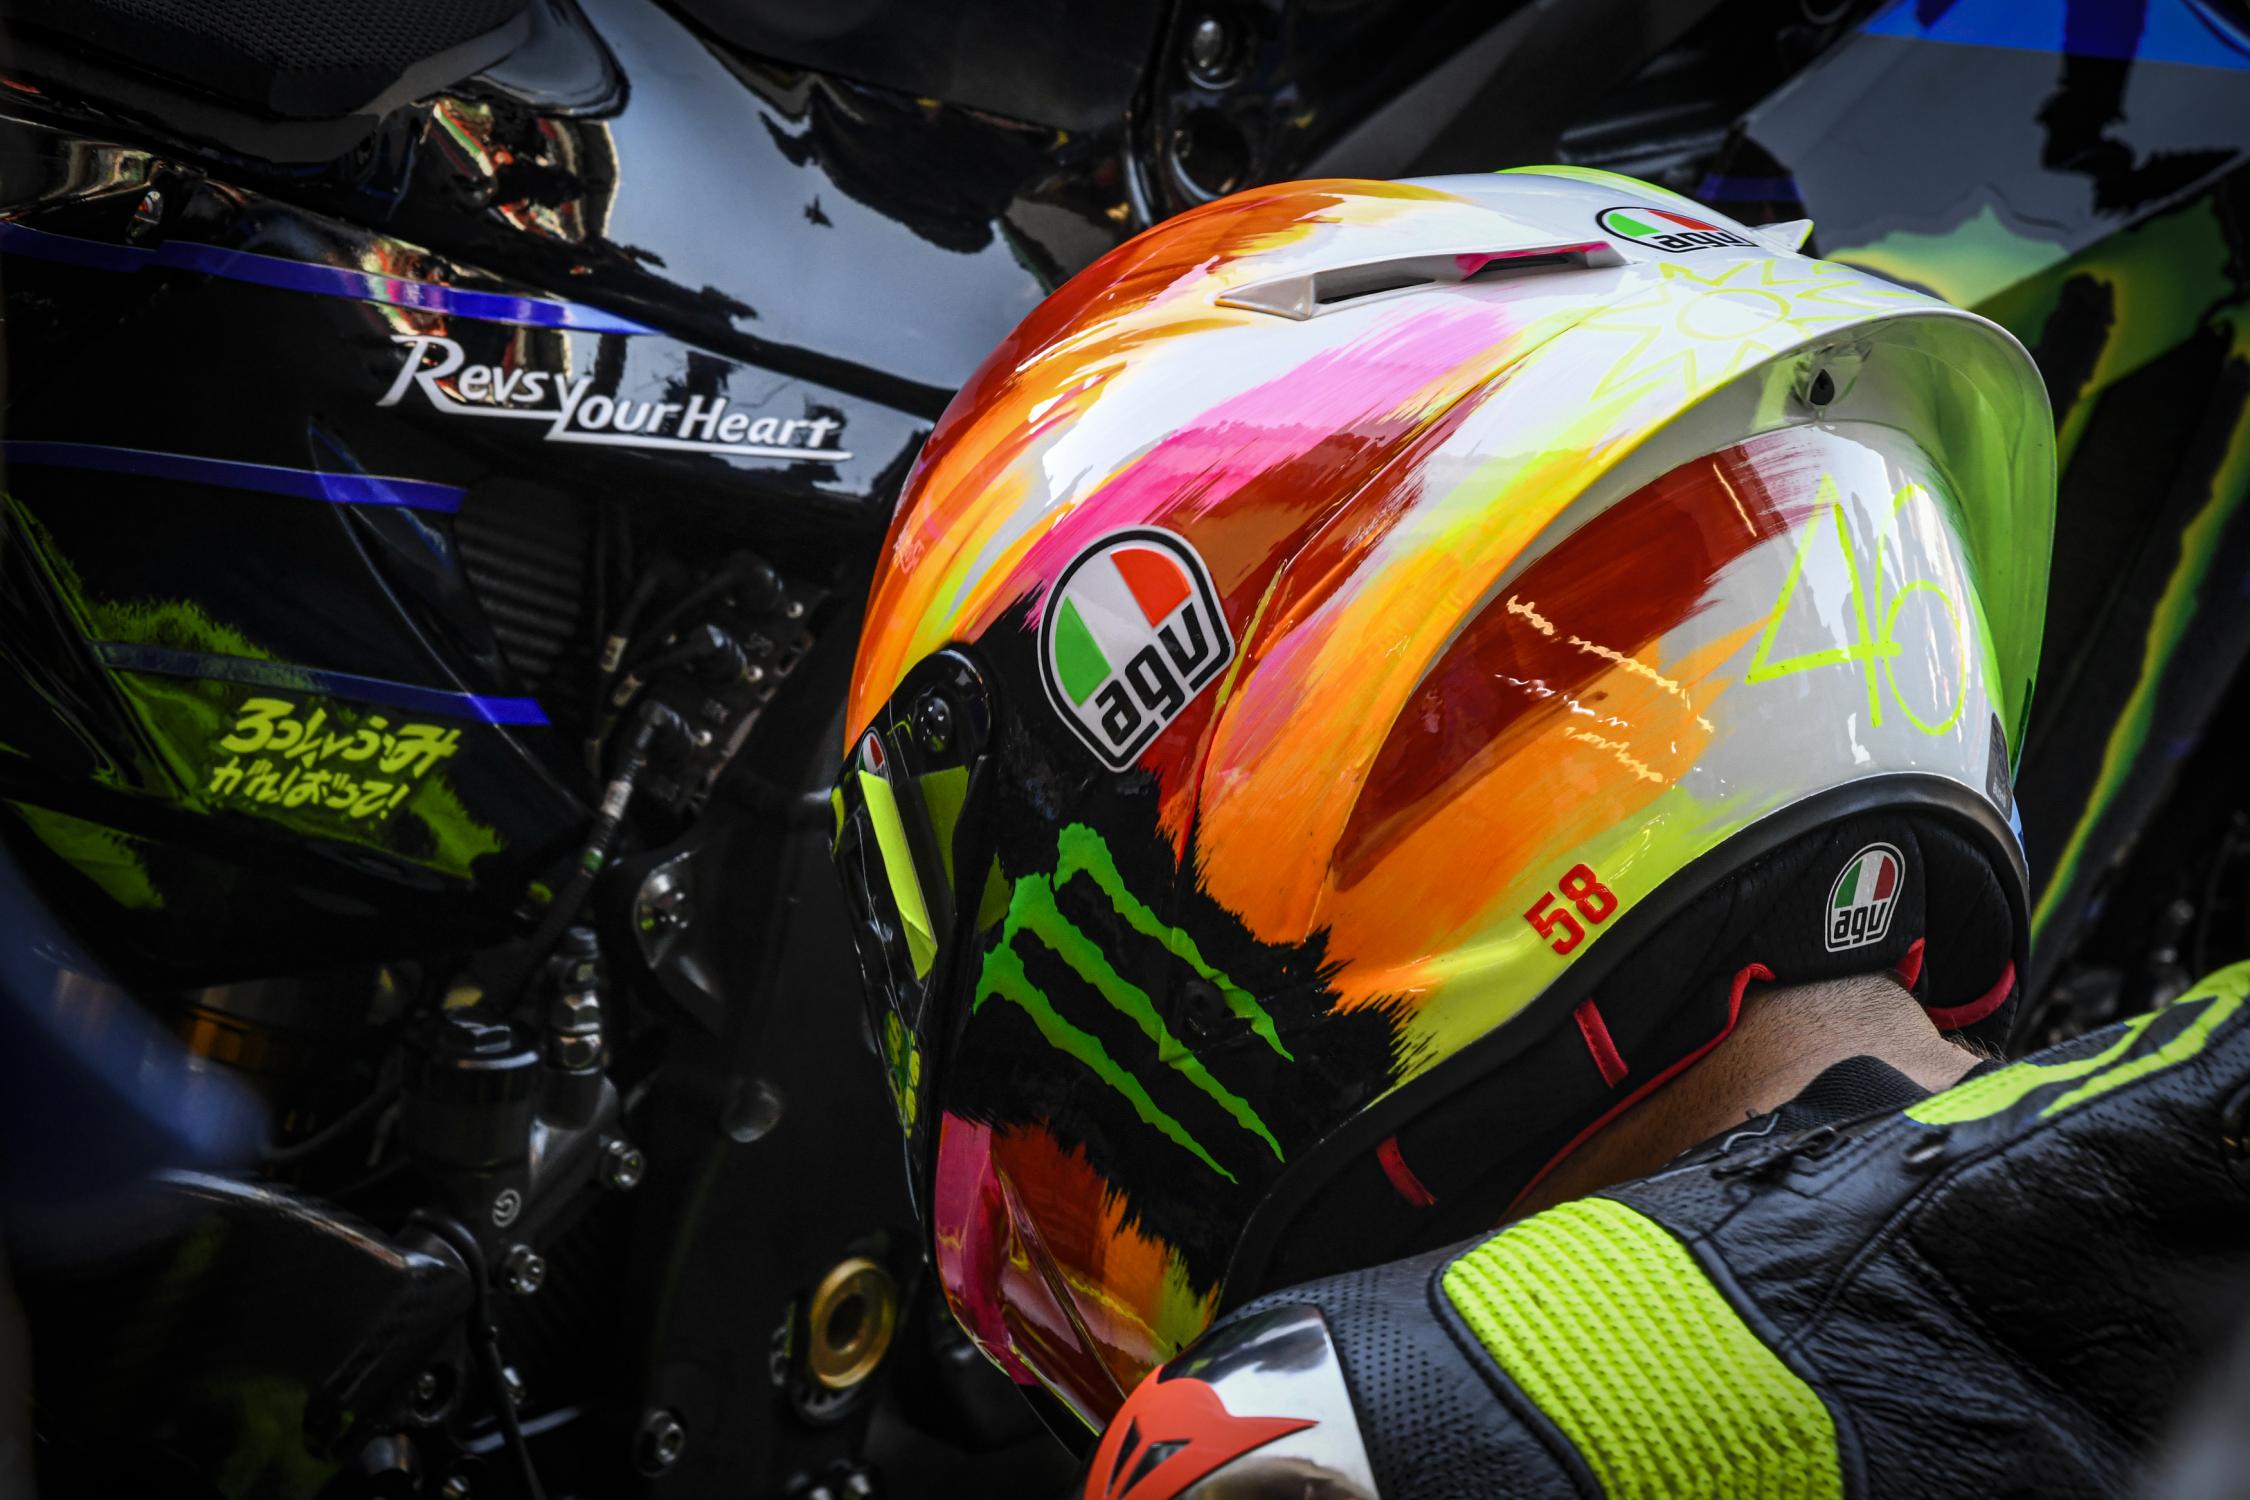 notifikation mentalitet skære ned MotoGP 2019 Mugello, Valentino Rossi: “Dobbiamo fare un miglioramento  serio” Classifica campionato e prossima gara